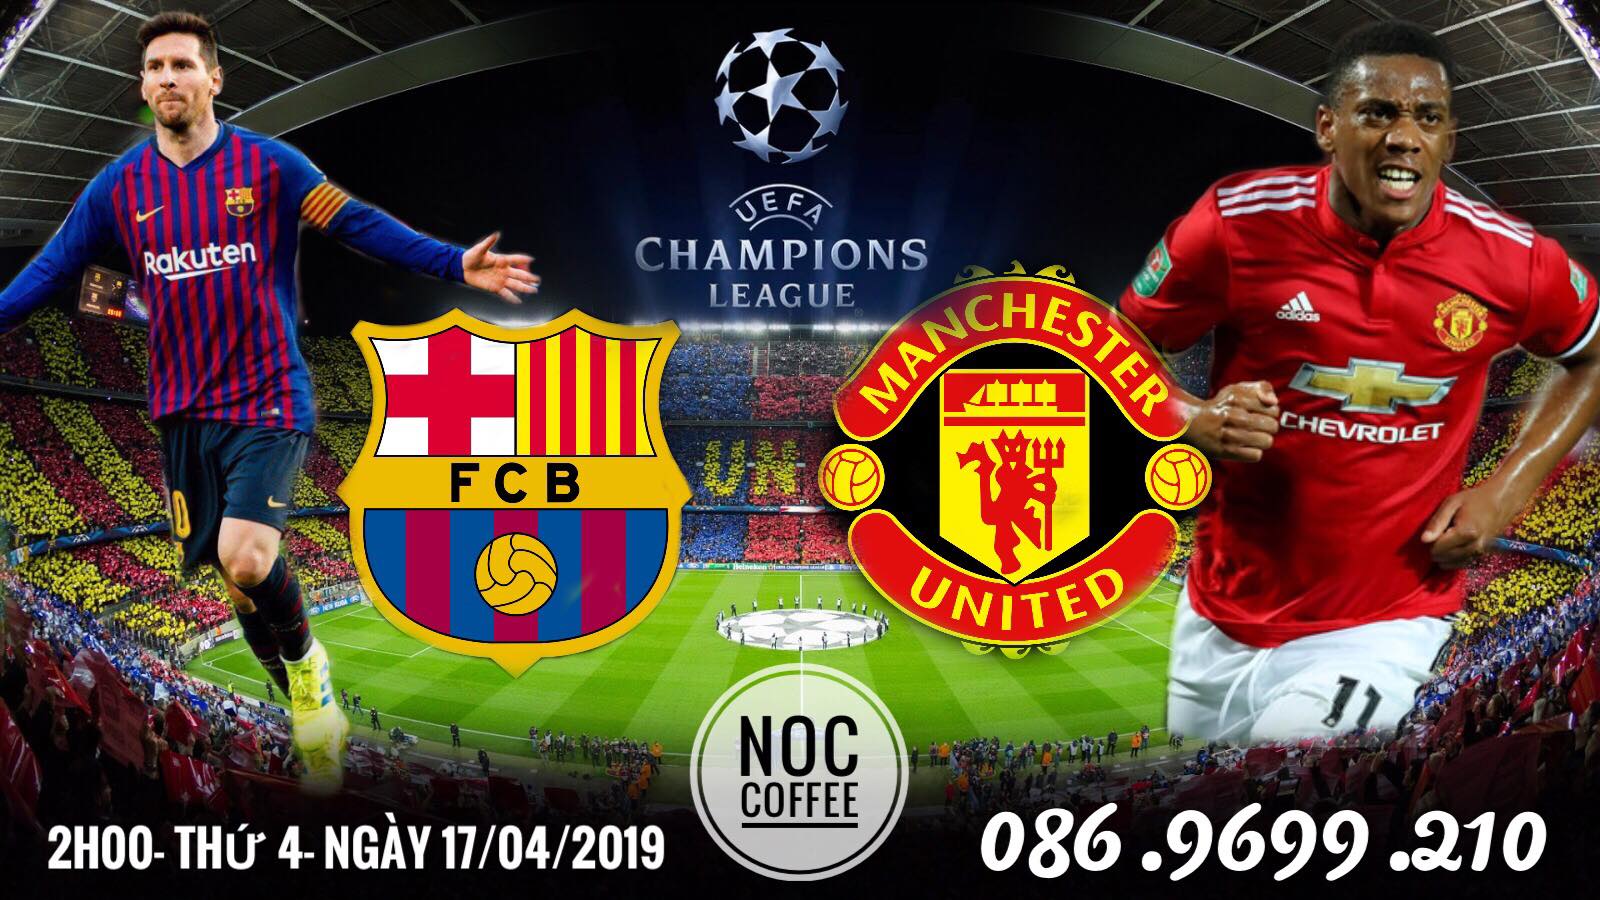 Barca vs Man Utd - 2h00 Ngày 17/04/2019 tại NOC Coffee | Champions